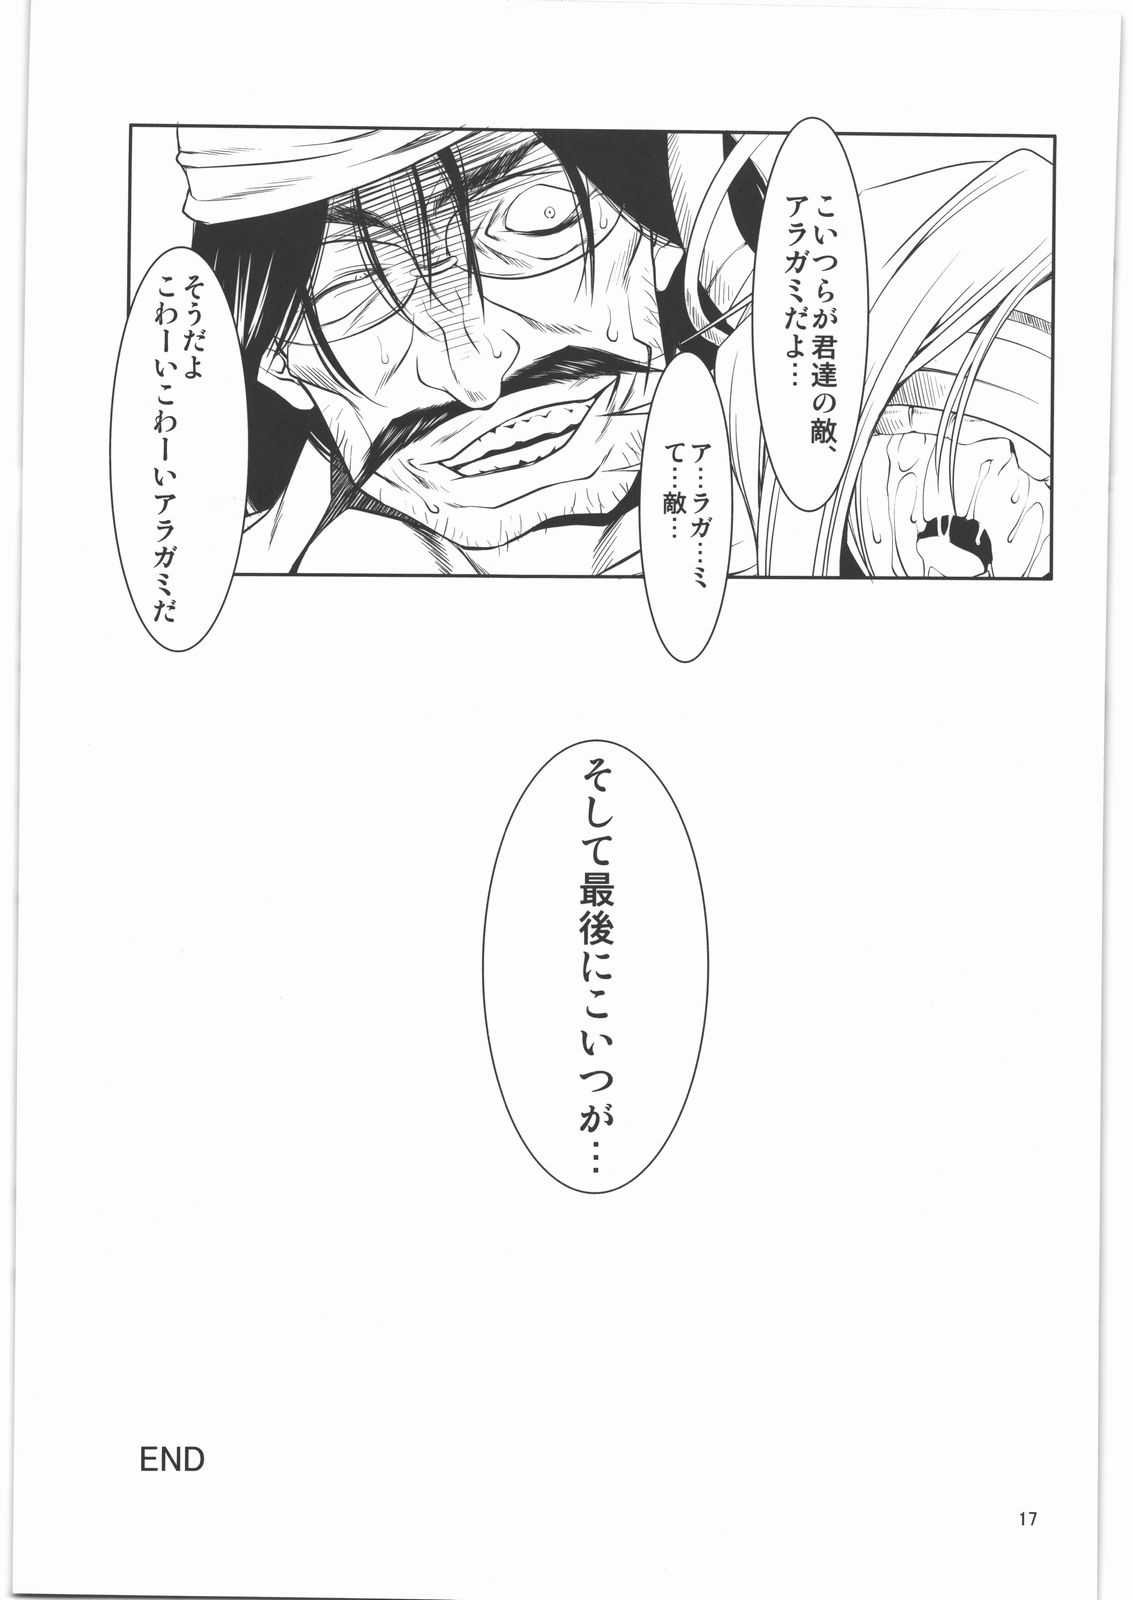 (COMIC1☆05) [FAKESTAR (Miharu)] AE (GOD EATER) (COMIC1☆05) [FAKESTAR (美春)] AE (ゴッドイーター)